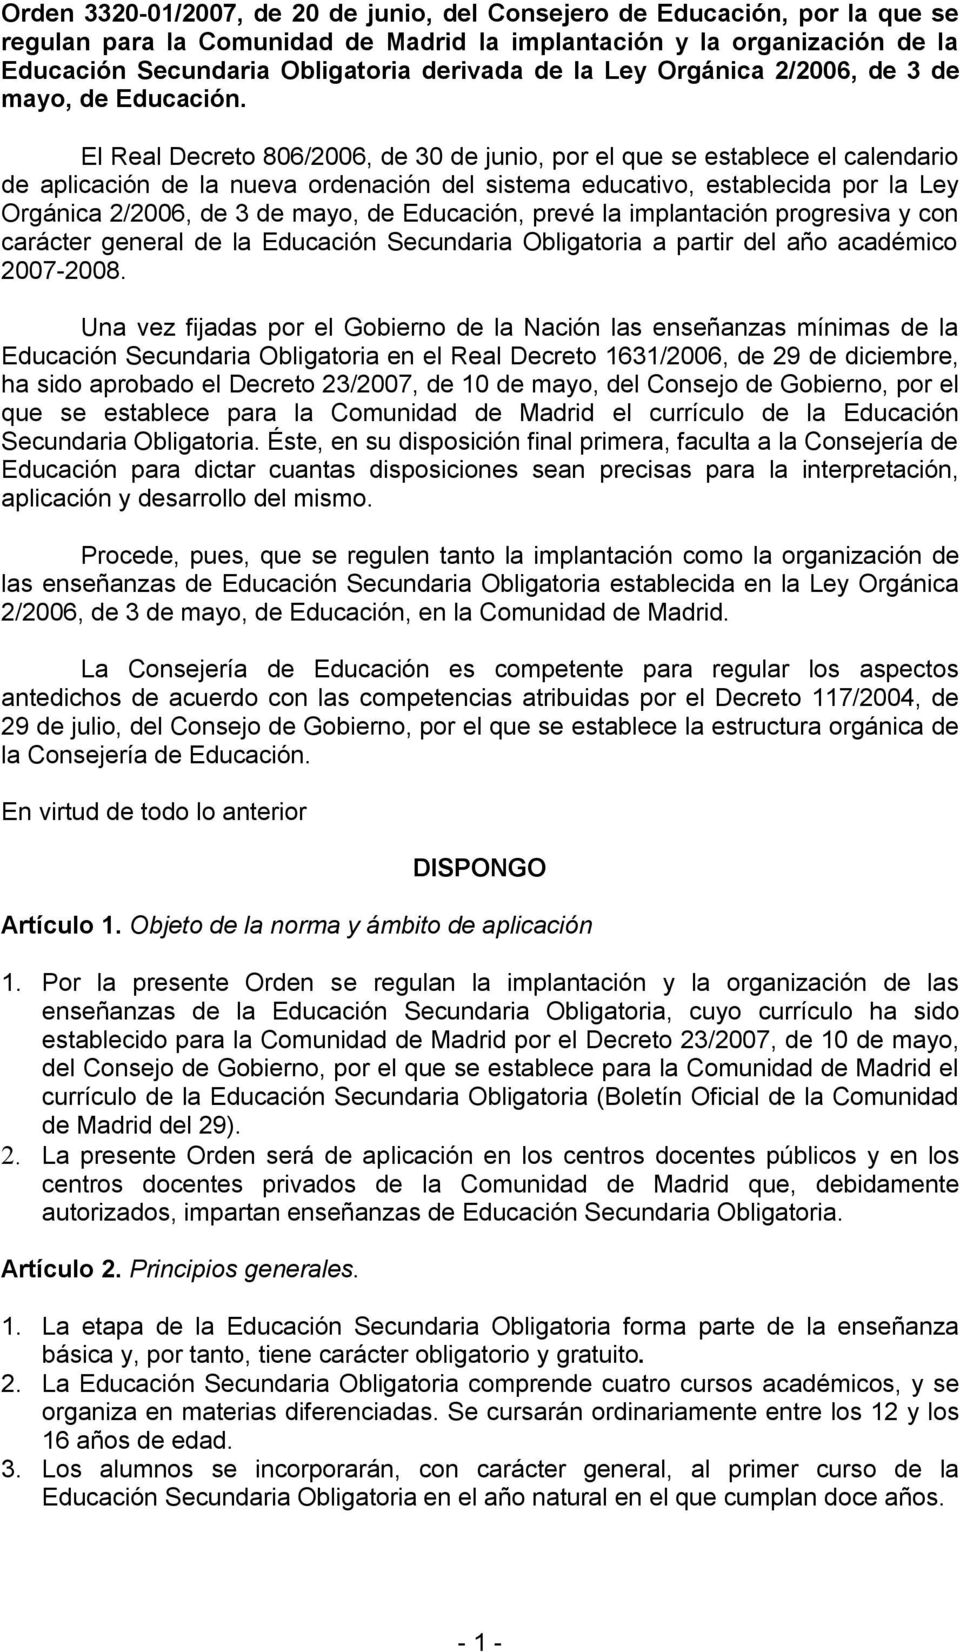 El Real Decreto 806/2006, de 30 de junio, por el que se establece el calendario de aplicación de la nueva ordenación del sistema educativo, establecida por la Ley Orgánica 2/2006, de 3 de mayo, de